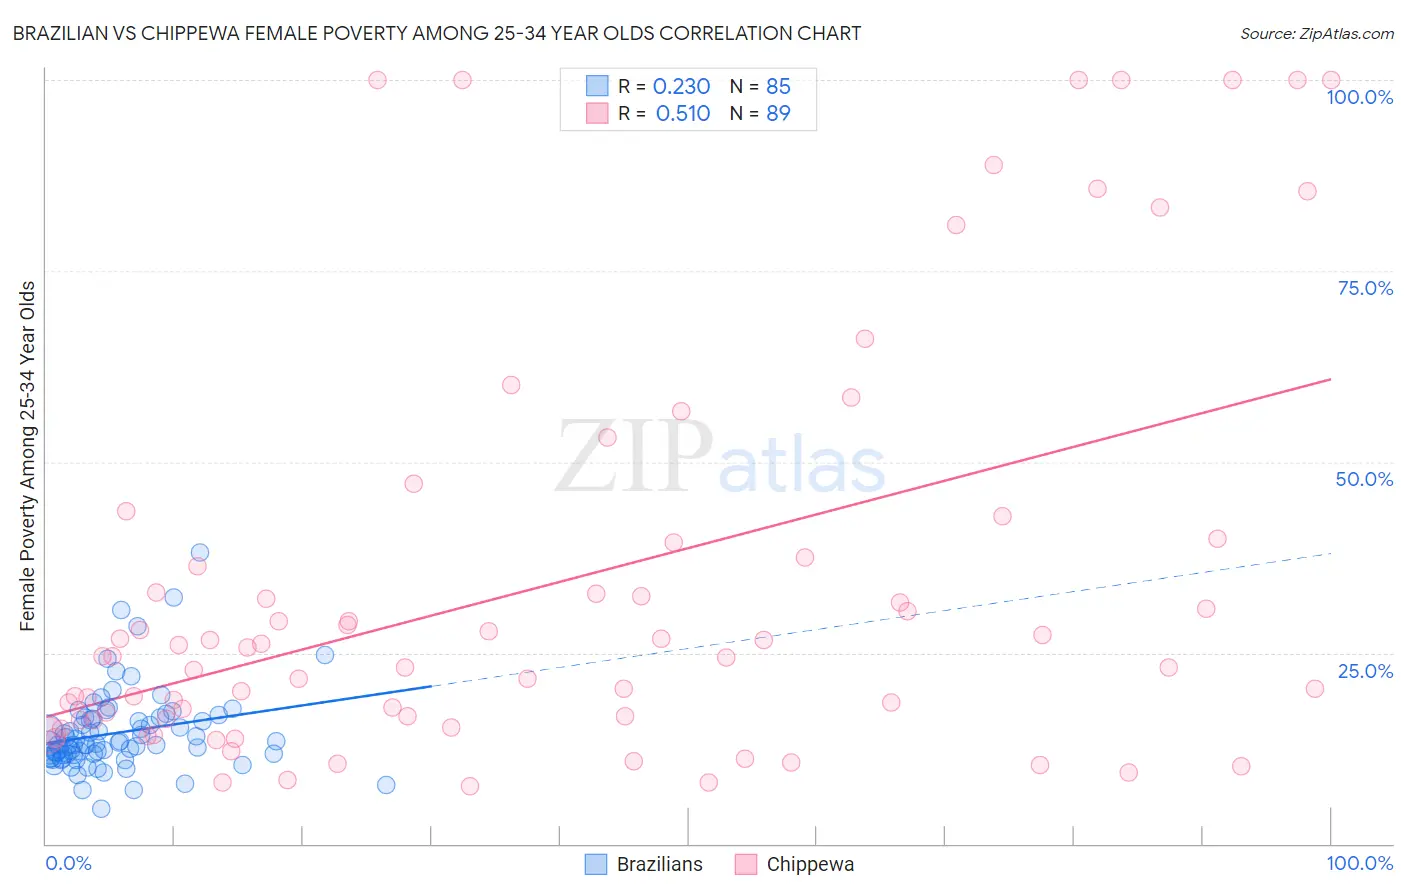 Brazilian vs Chippewa Female Poverty Among 25-34 Year Olds